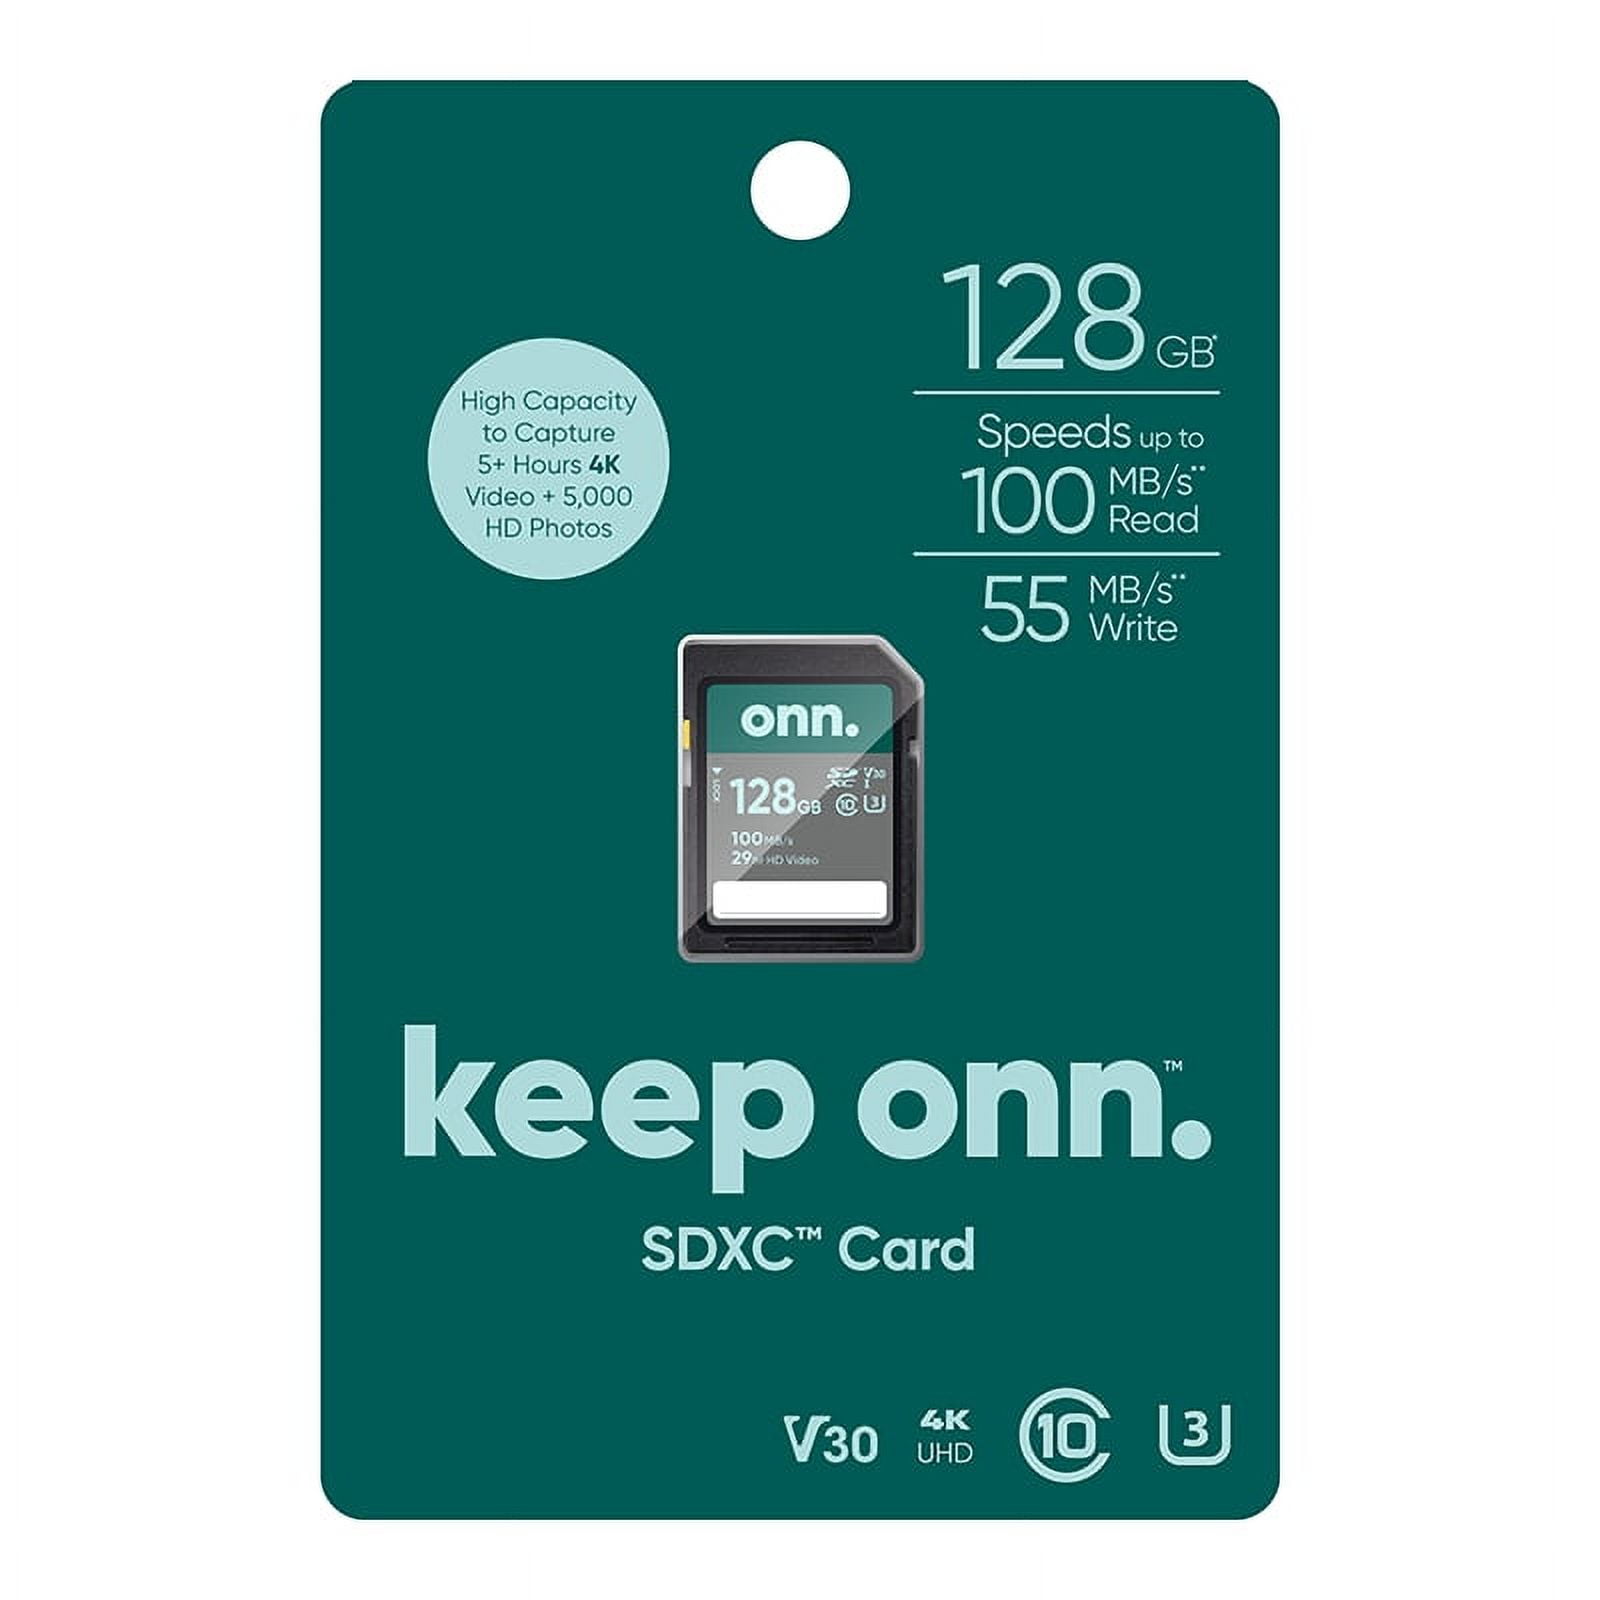 Carte mémoire Micro SD SanDisk Classe 10 - 64 GO - PopSmart